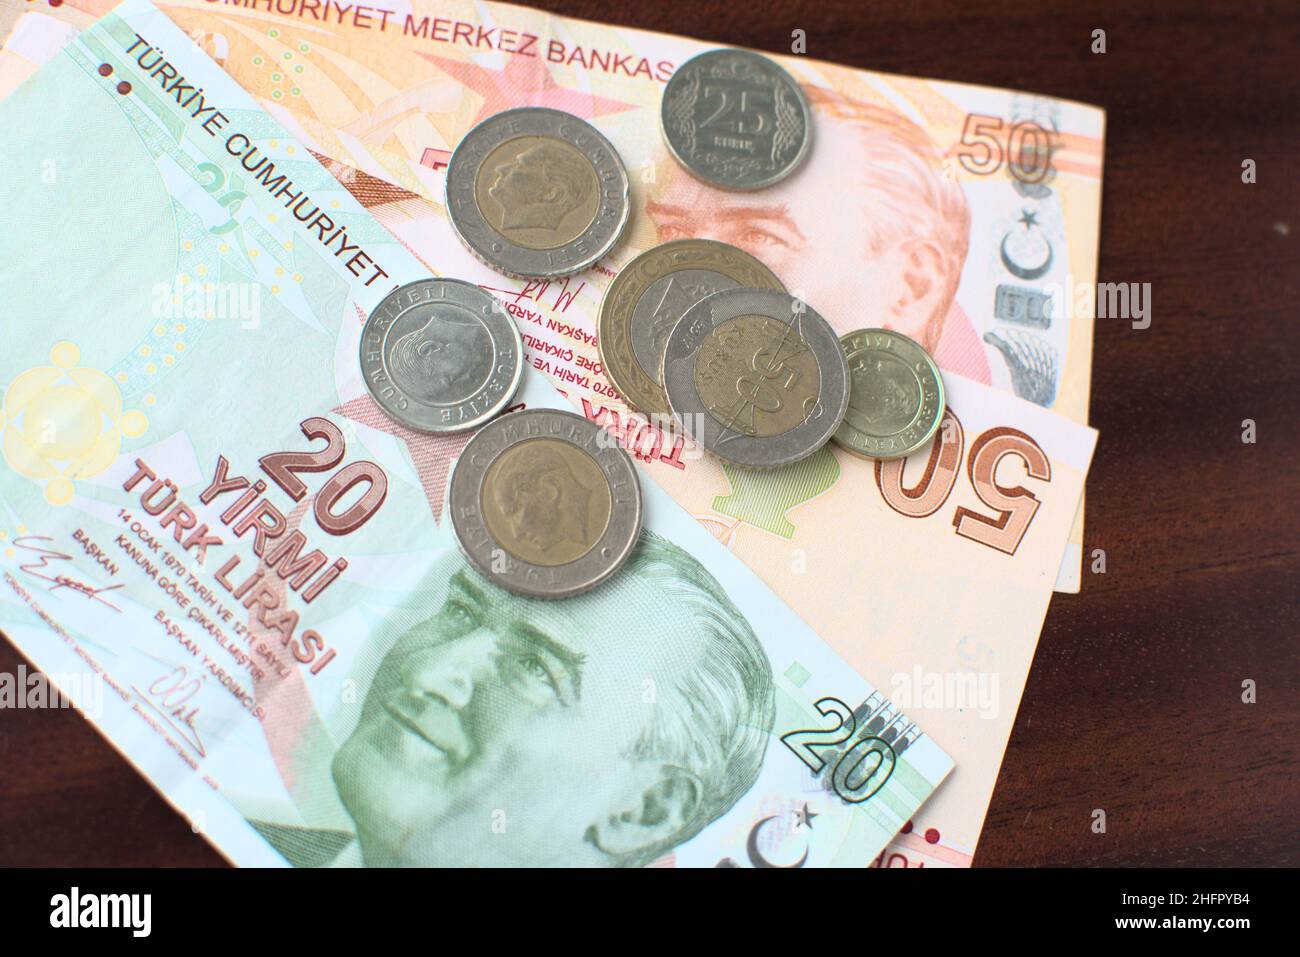 Alcune banconote e monete turche su sfondo marrone. Alcune liras turche per pagare le bollette su un tavolo marrone. Foto Stock